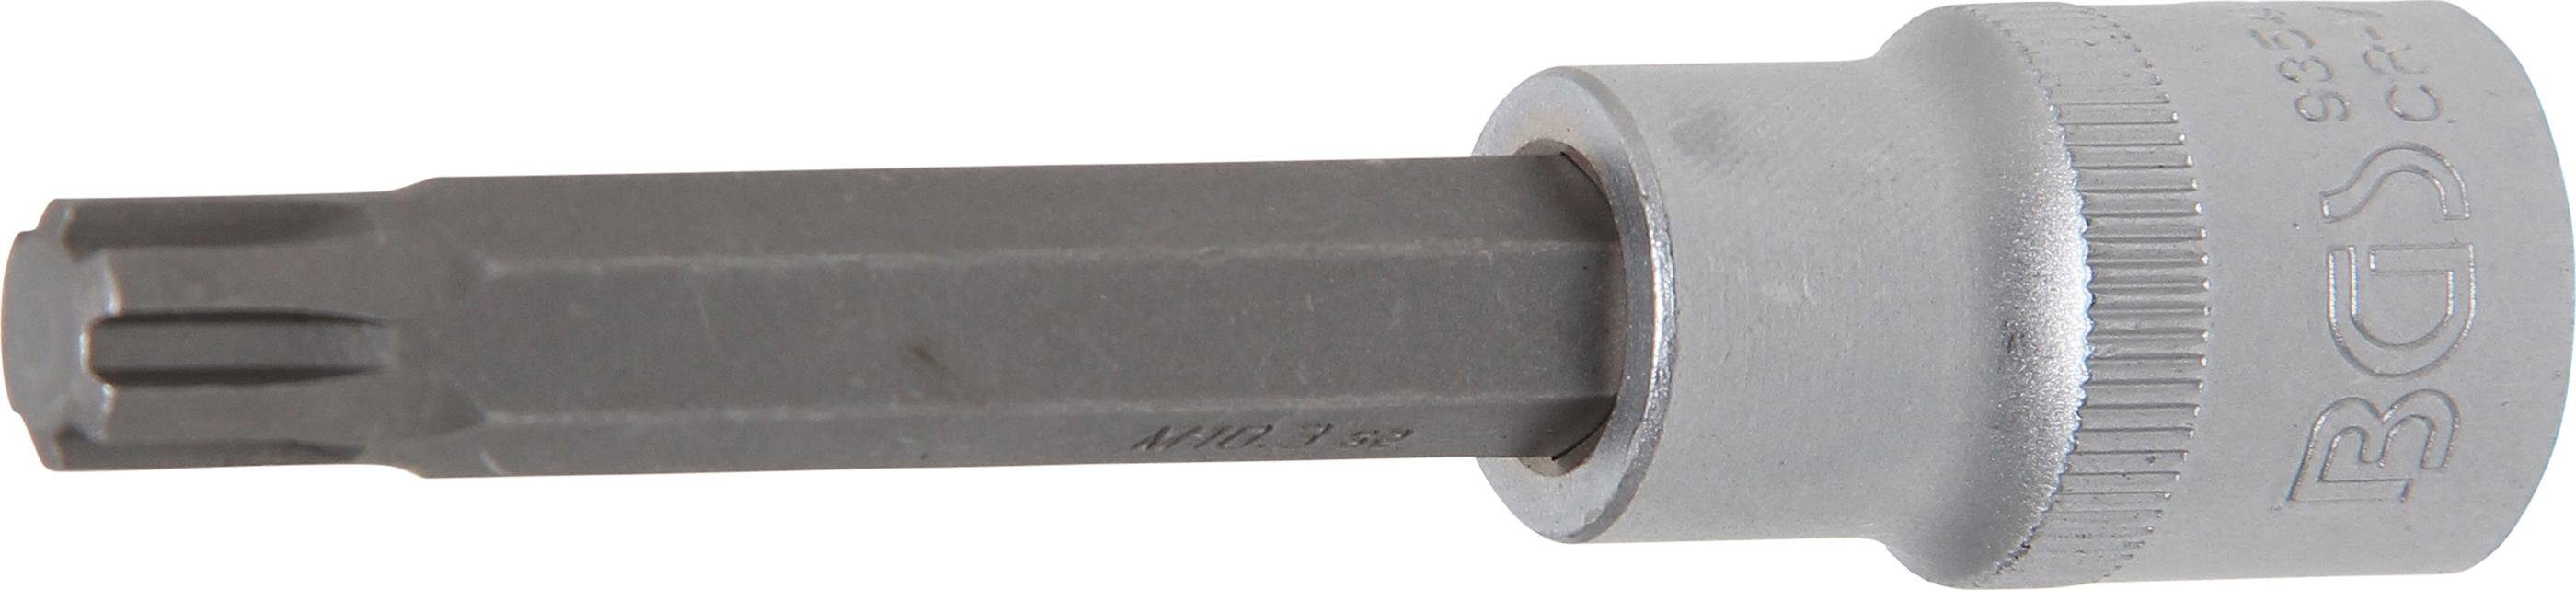 BGS technic Bit-Schraubendreher Bit-Einsatz, Länge 100 mm, Antrieb Innenvierkant 12,5 mm (1/2), Keil-Profil (für Ribe) M10,3